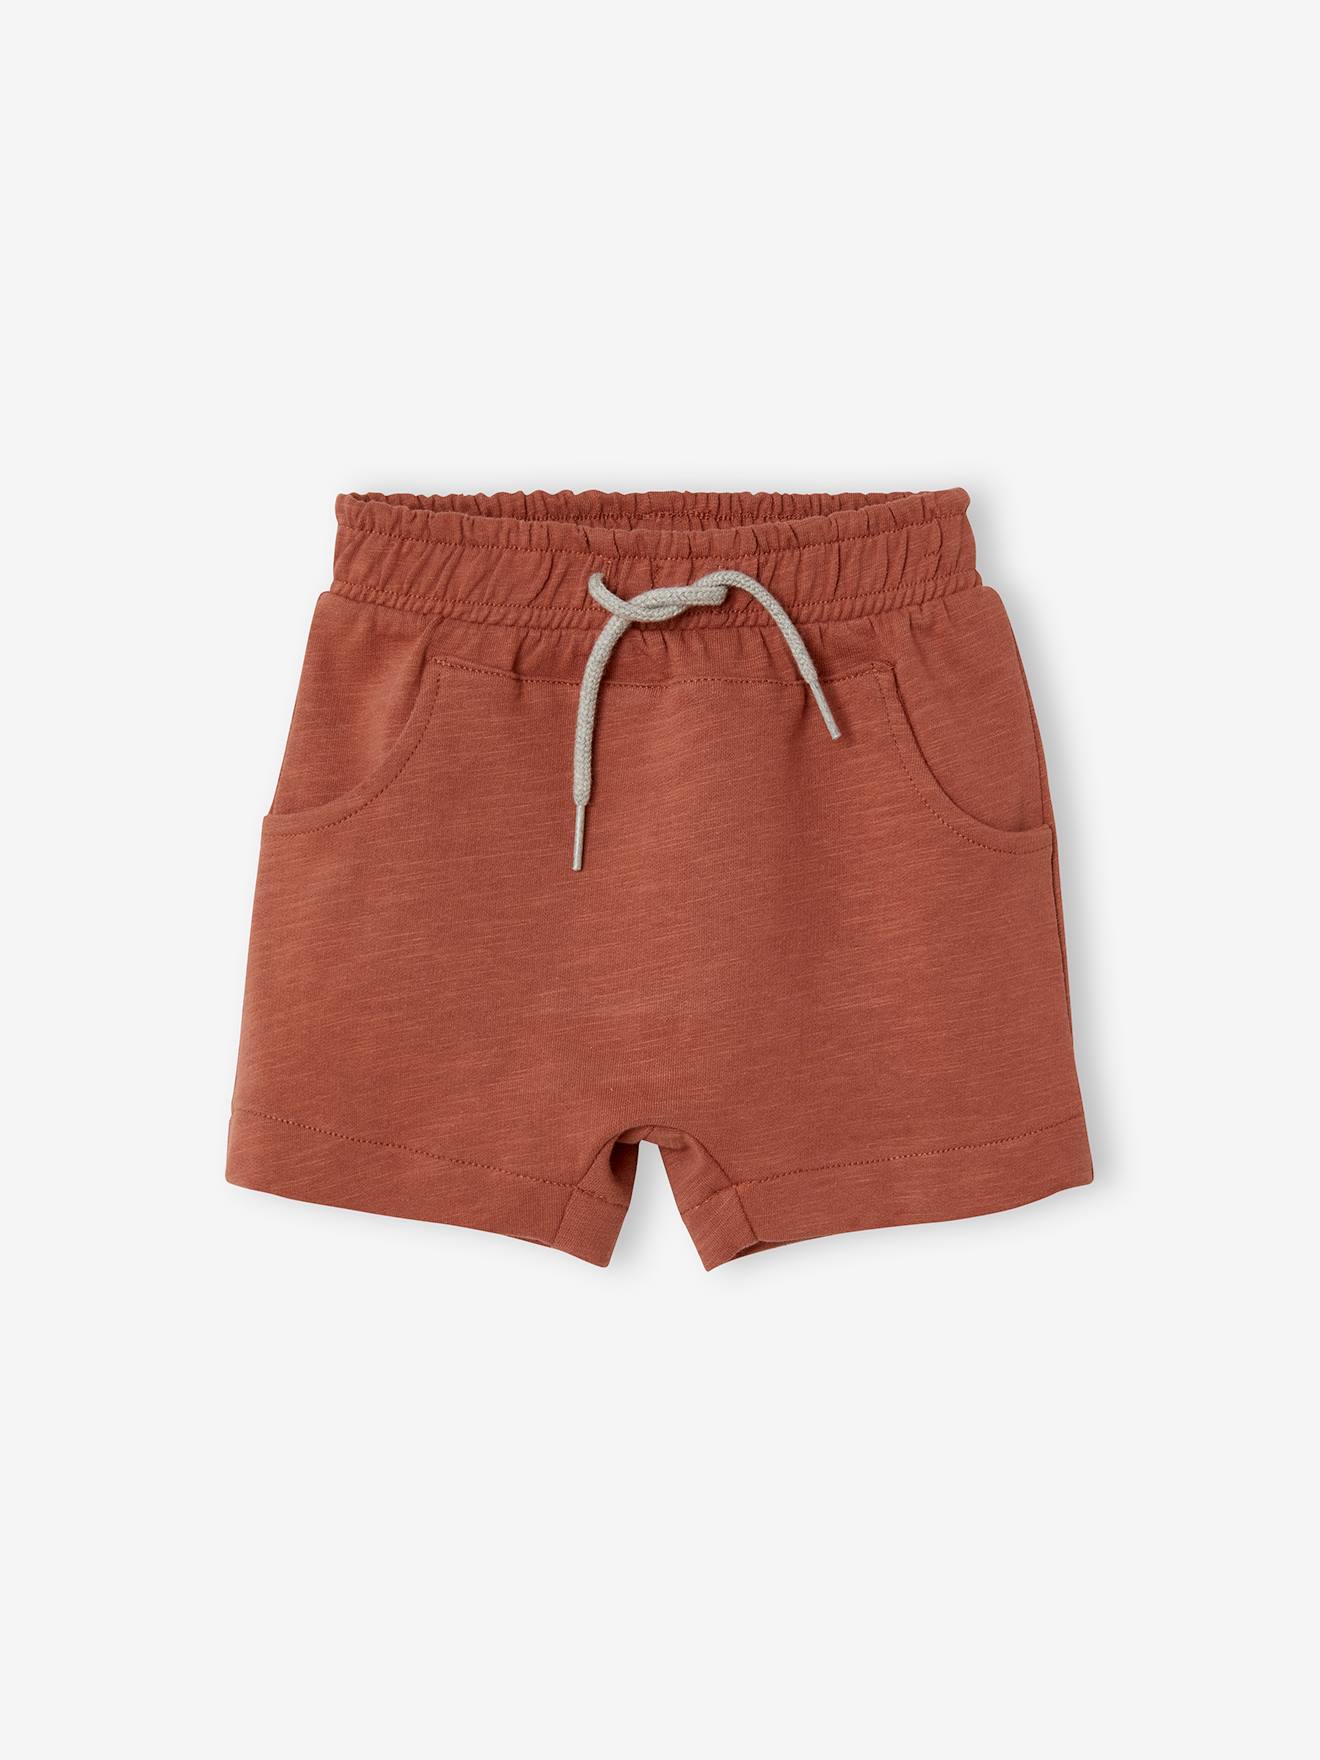 Bermuda Shorts in Fleece for Baby Boys brown medium solid